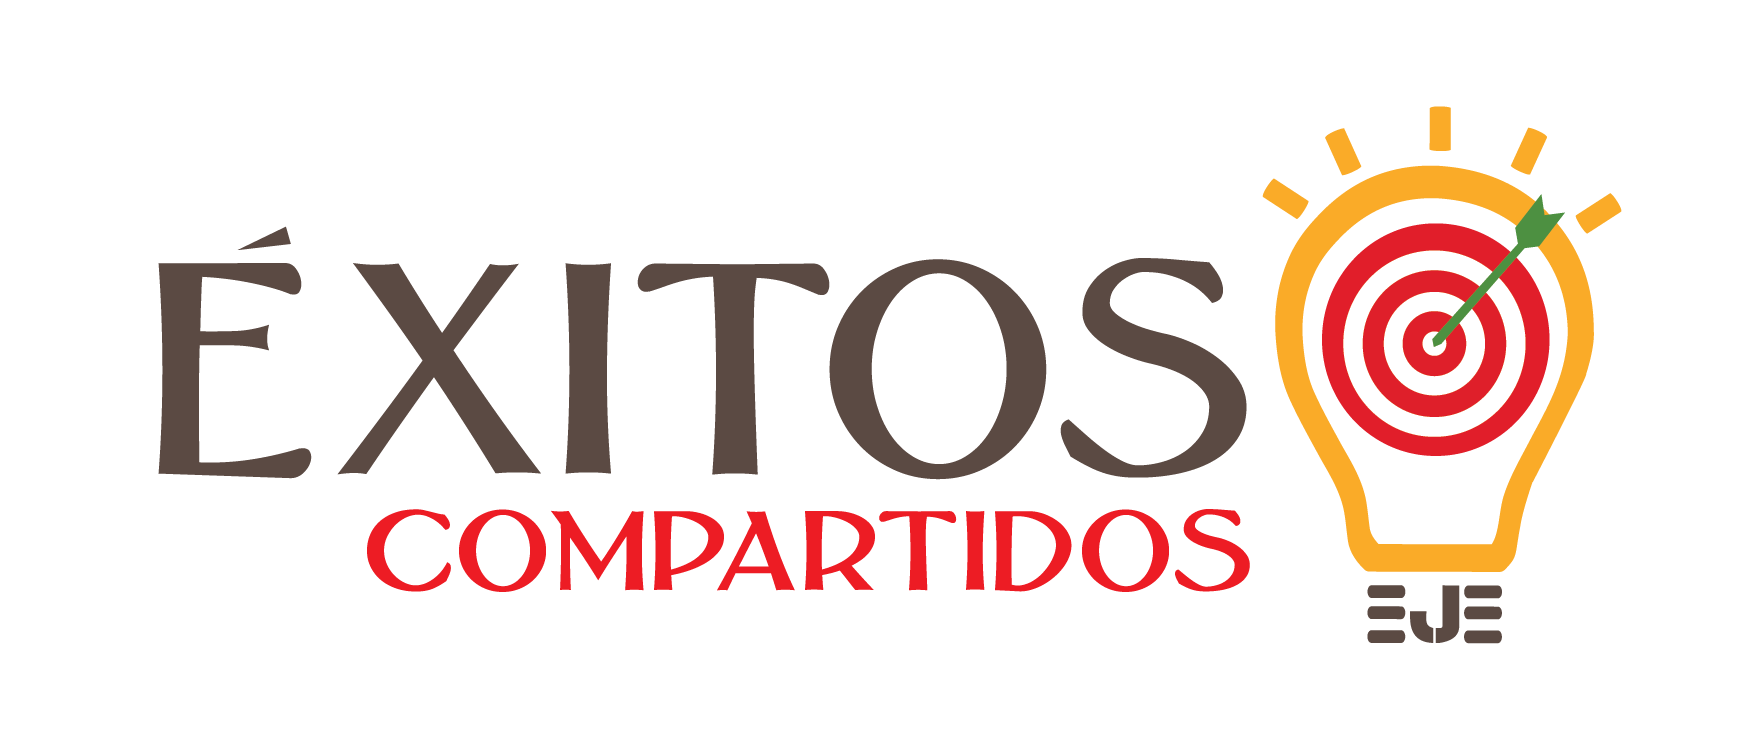 LOGO EXITOS COMPARTIDOS